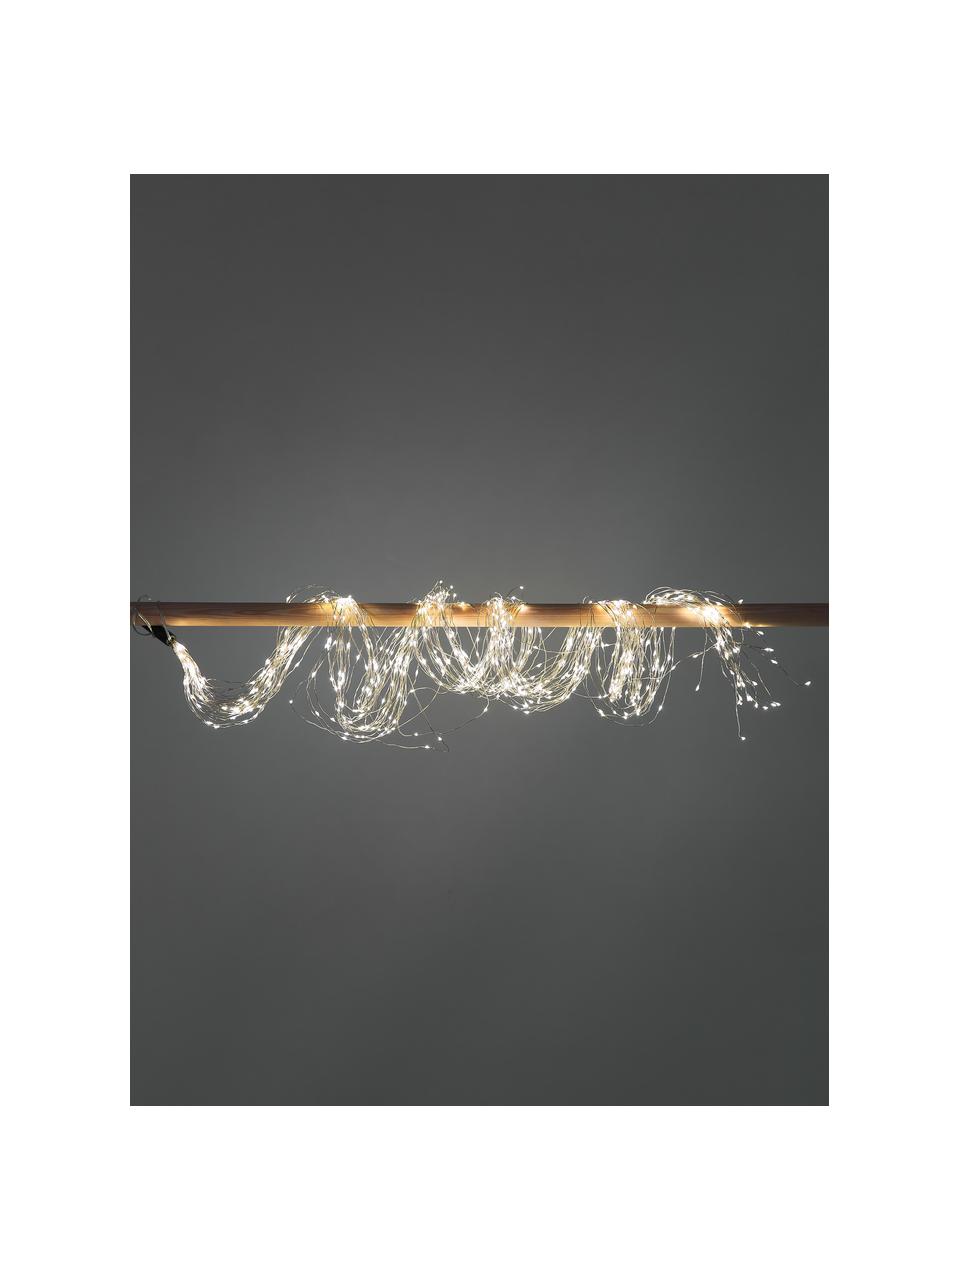 Světelný LED řetěz Clusters, 190 cm, Umělá hmota, Stříbrná, světlé dřevo, D 190 cm